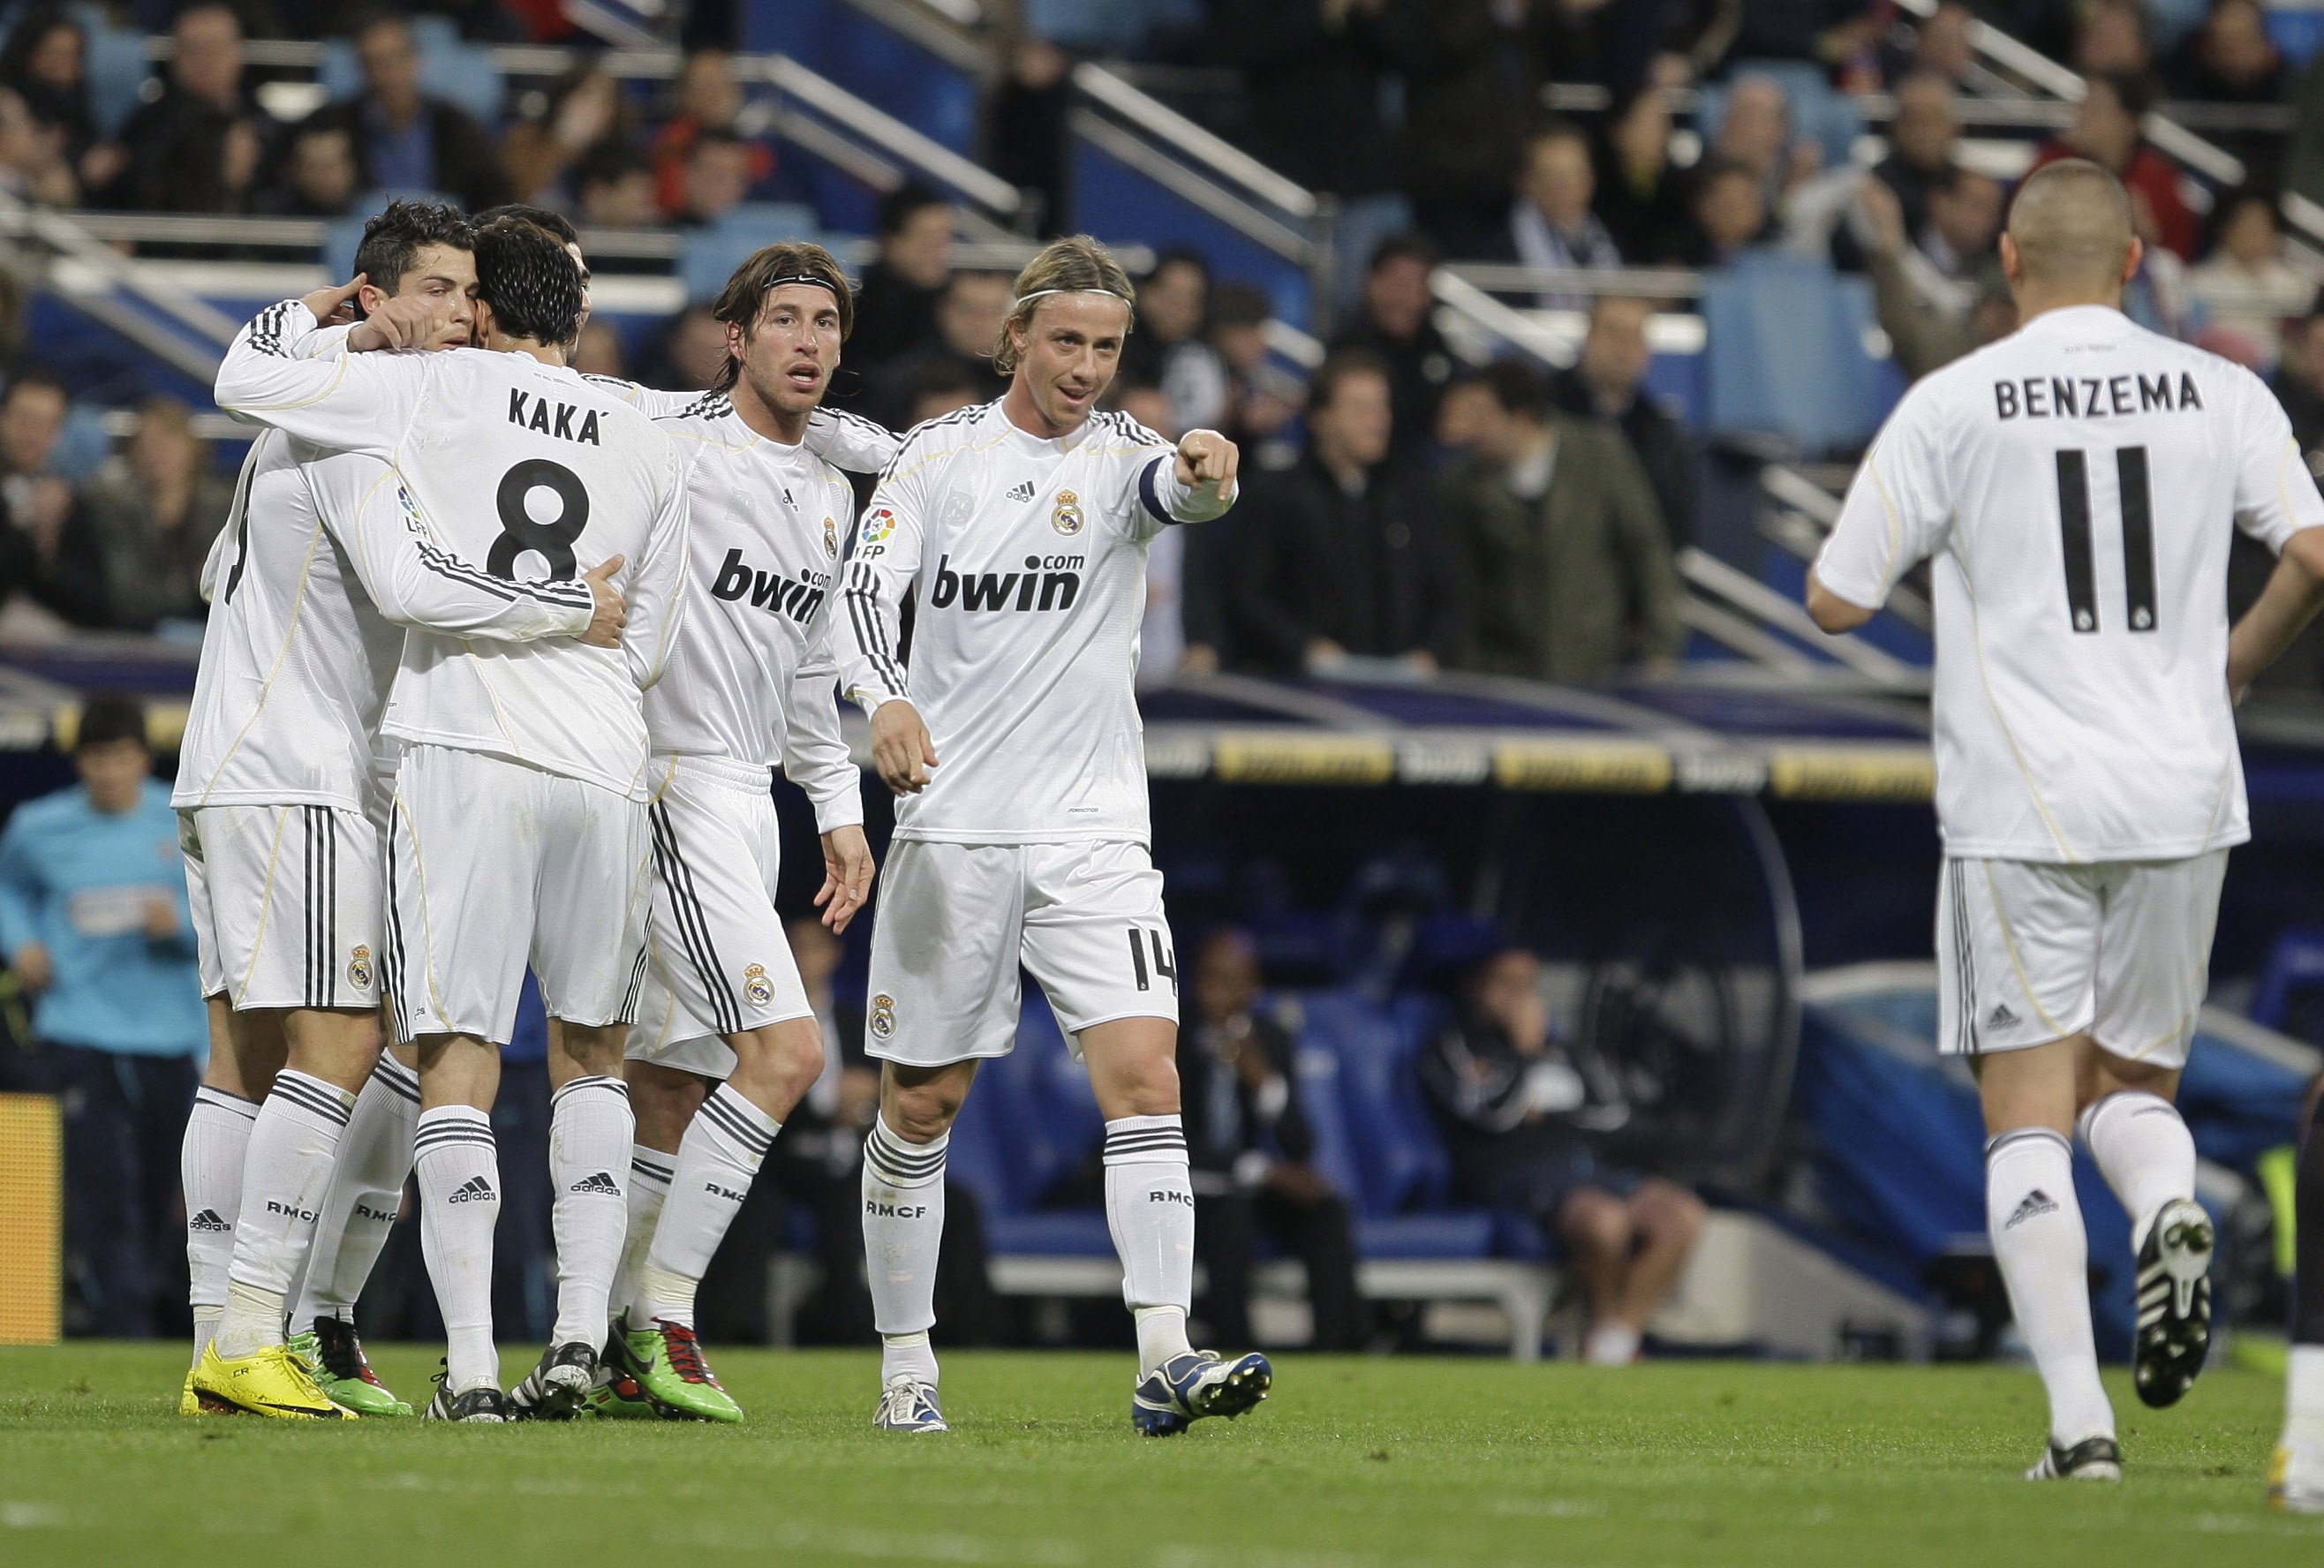 La Liga, Real Madrid, Patrick Mtiliga, Malaga, Cristiano Ronaldo